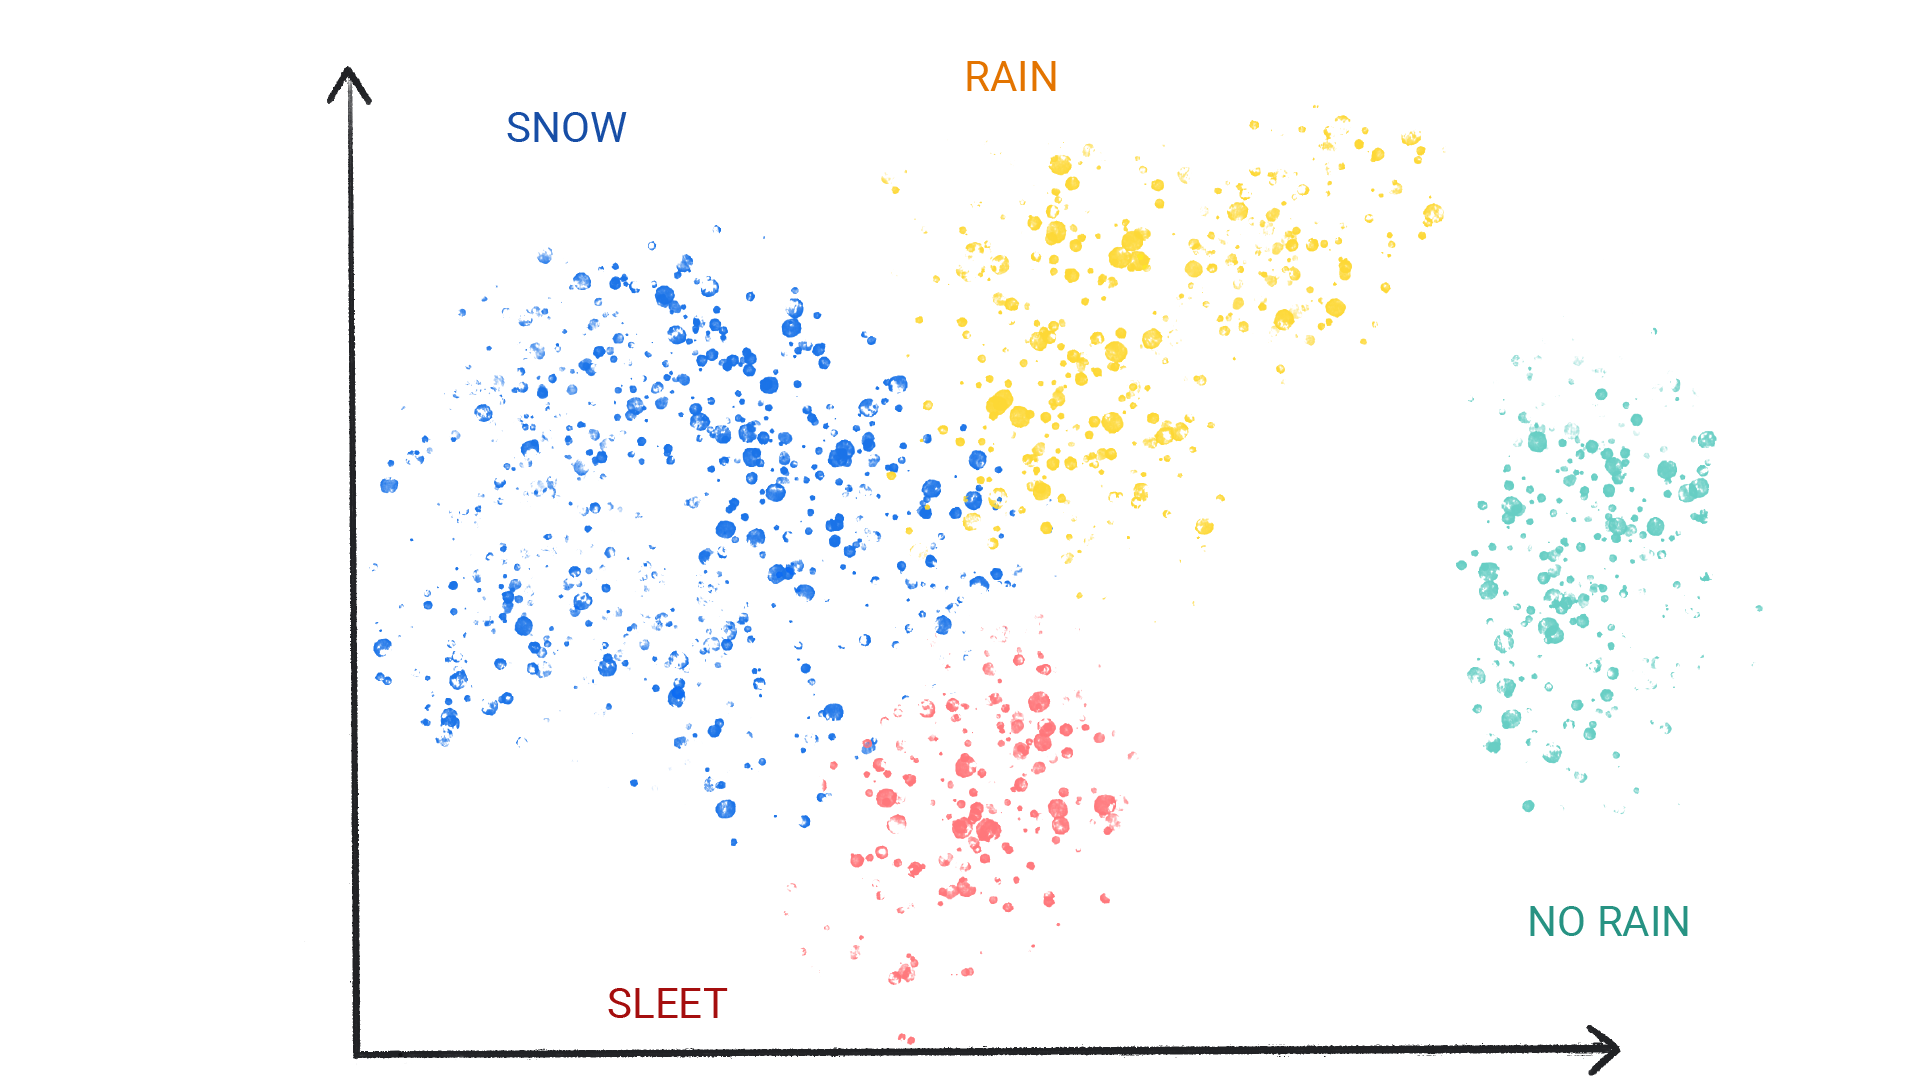 雪、雨、ひょう、雨なしとラベル付けされたクラスターに色付きのドットの画像。